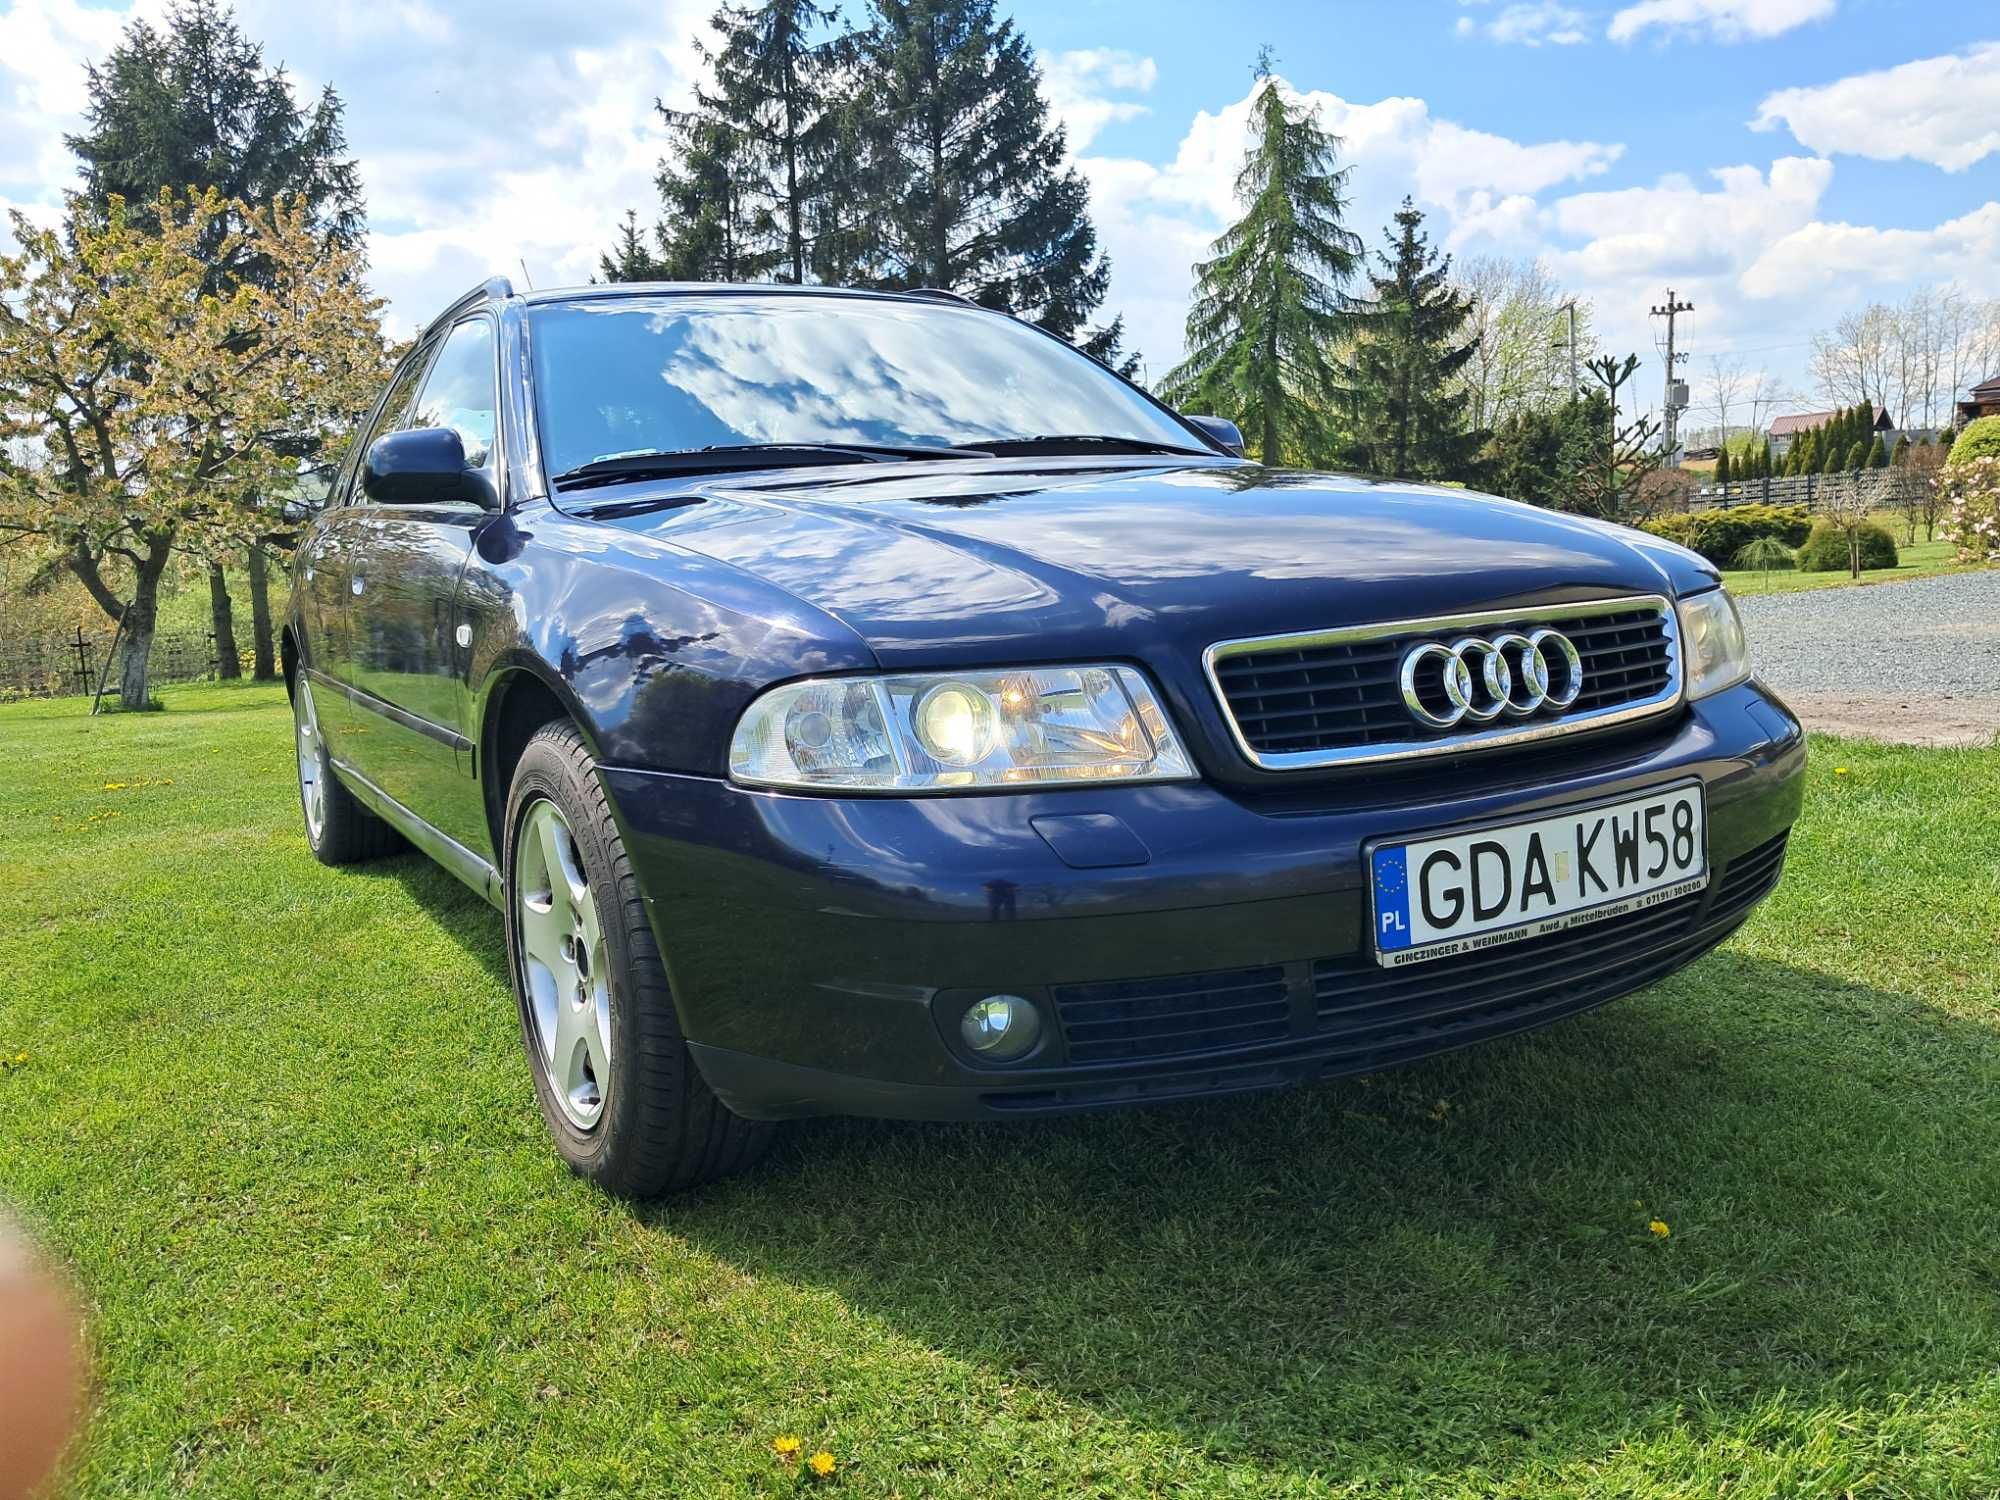 Audi A4 rok 2000 w dobrym stanie